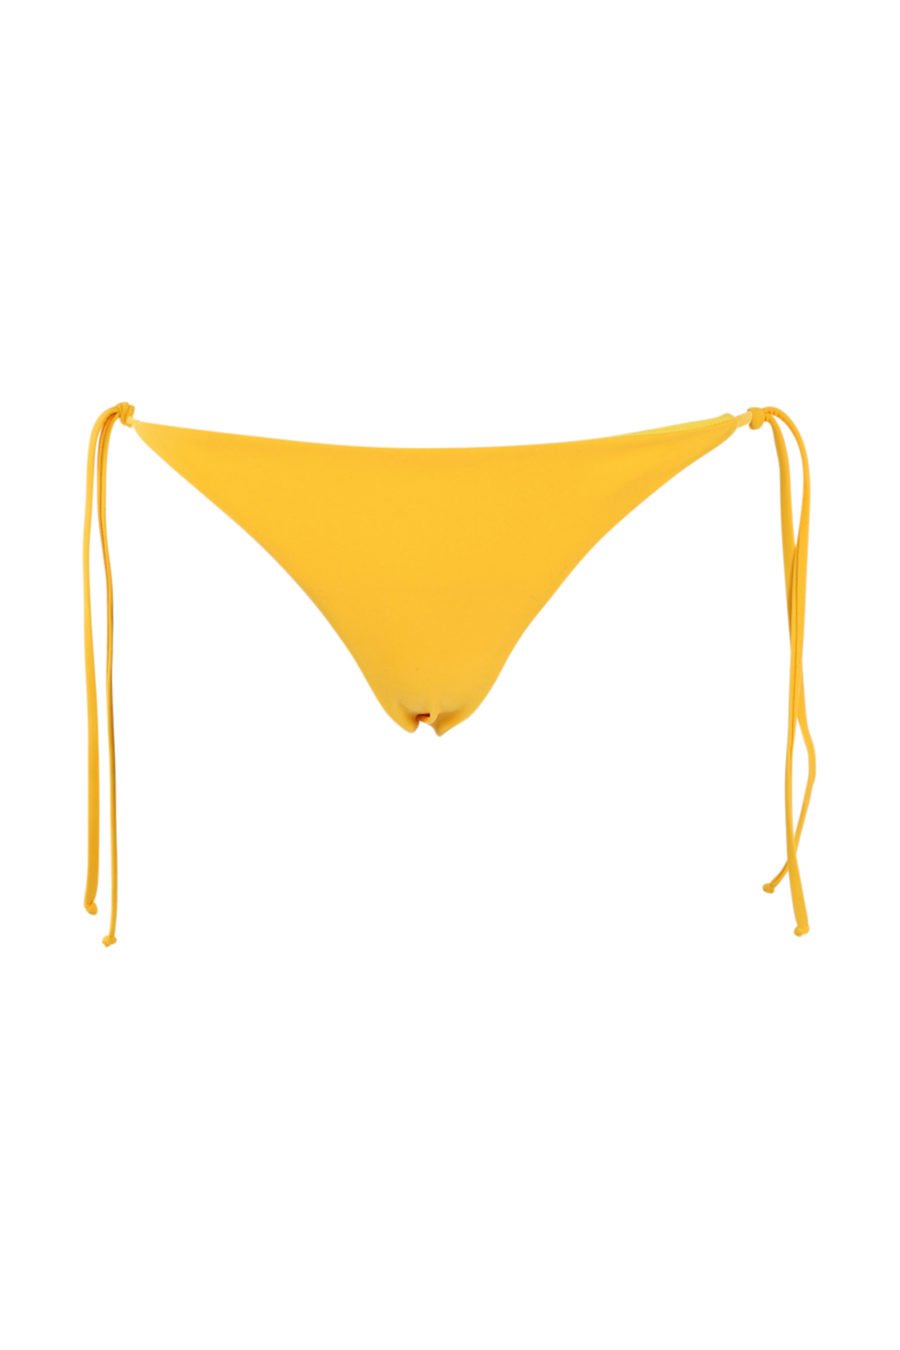 Maillot de bain jaune avec lacets et logo - IMG 0921